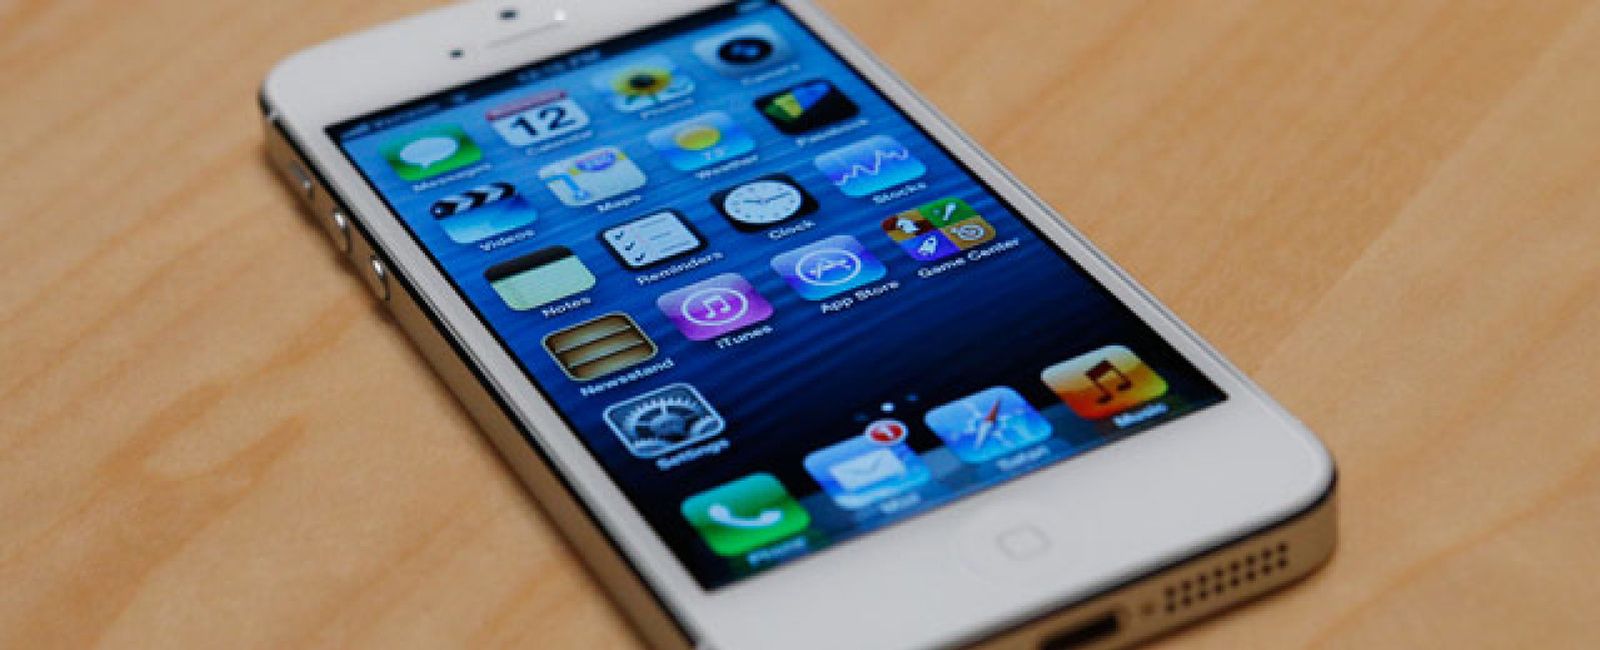 Foto: Apple aclara por qué no incluyó en su iPhone la carga inalámbrica ni el NFC